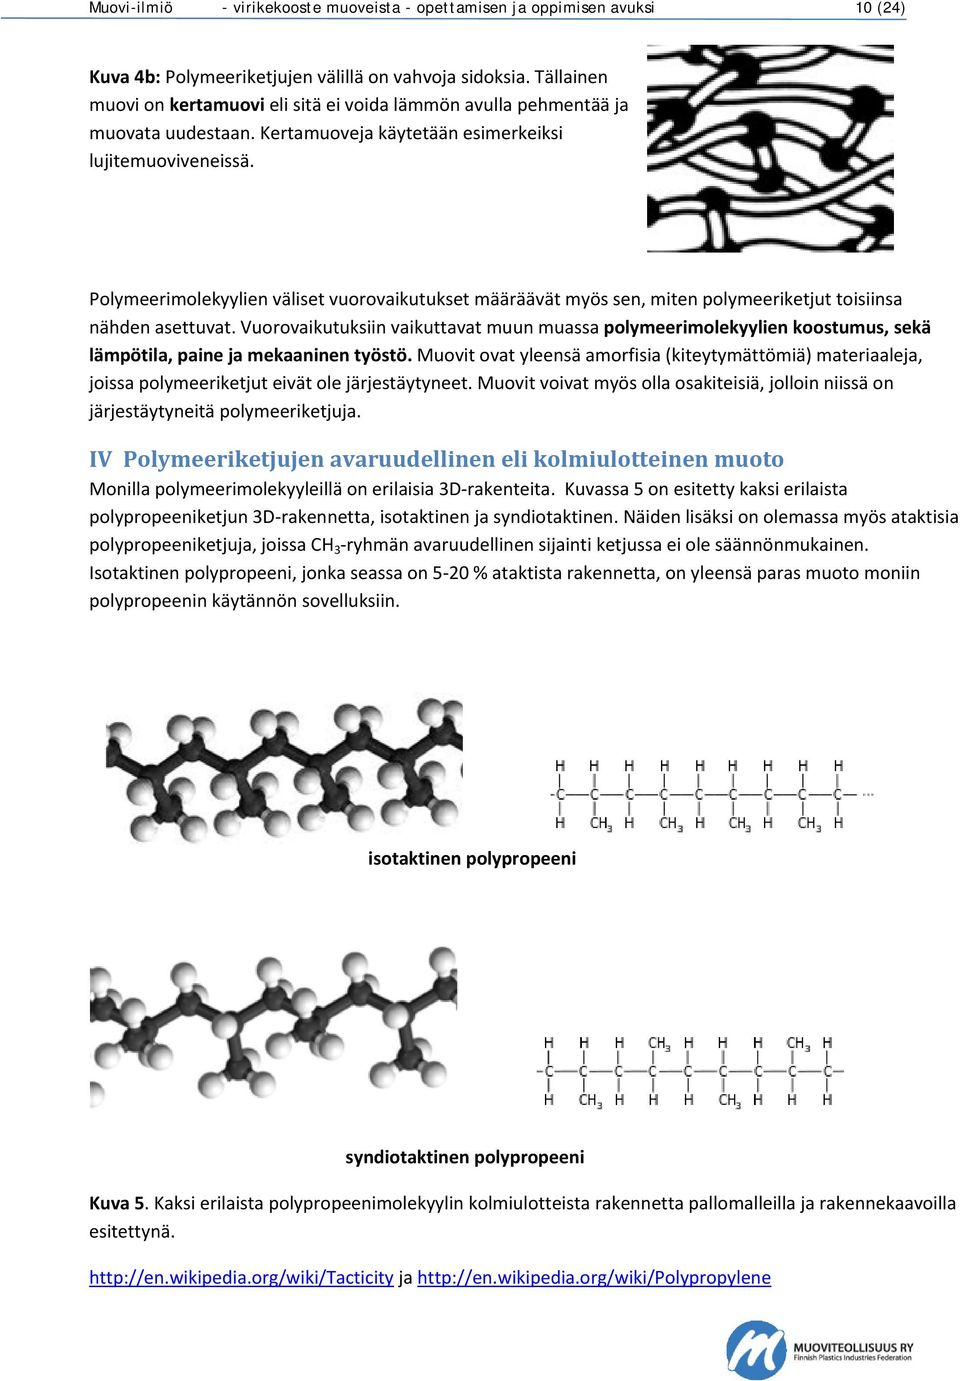 Polymeerimolekyylien väliset vuorovaikutukset määräävät myös sen, miten polymeeriketjut toisiinsa nähden asettuvat.